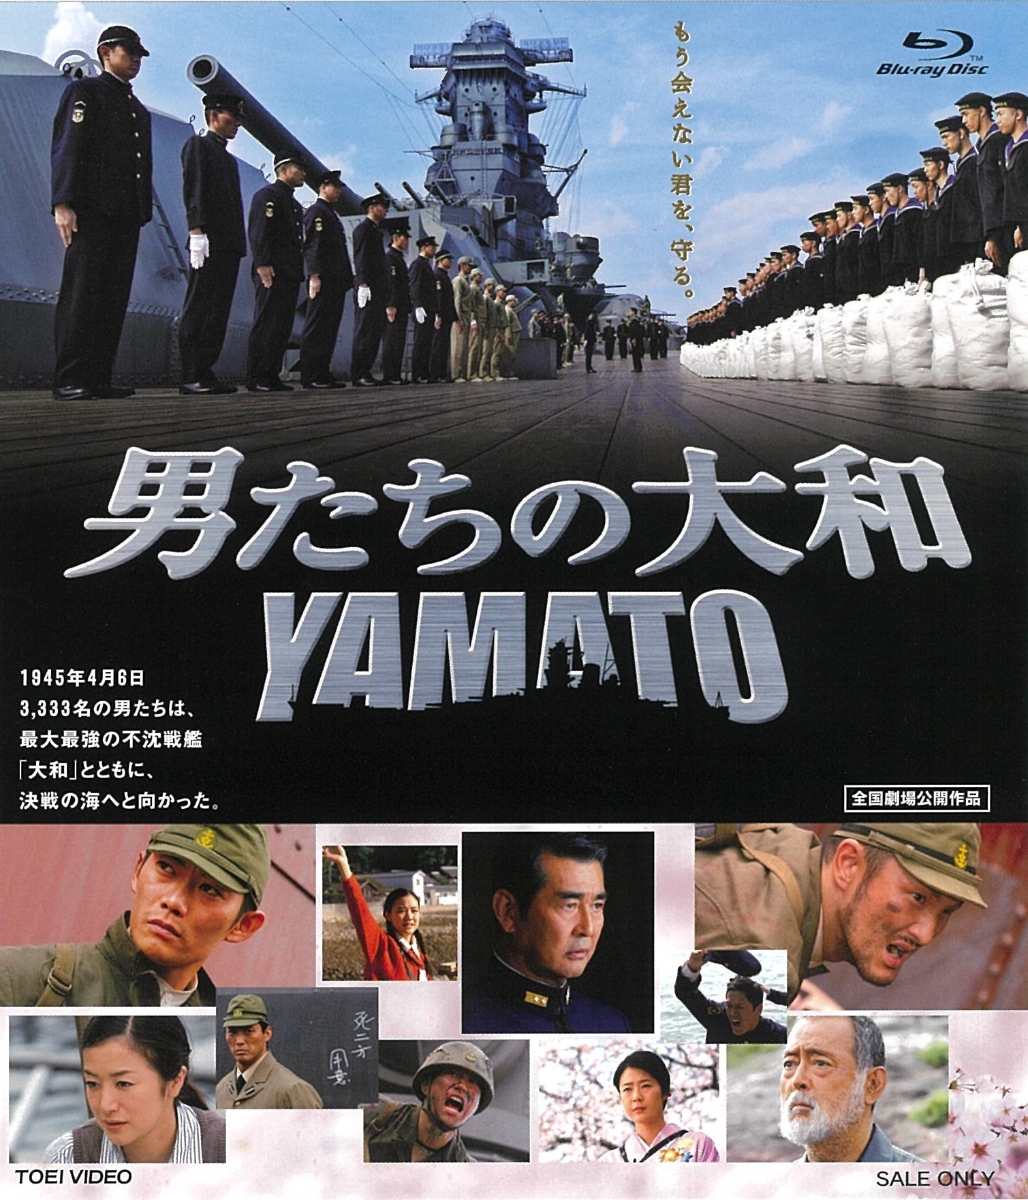 楽天ブックス: 男たちの大和 YAMATO【Blu-ray】 - 佐藤純彌 - 反町隆史